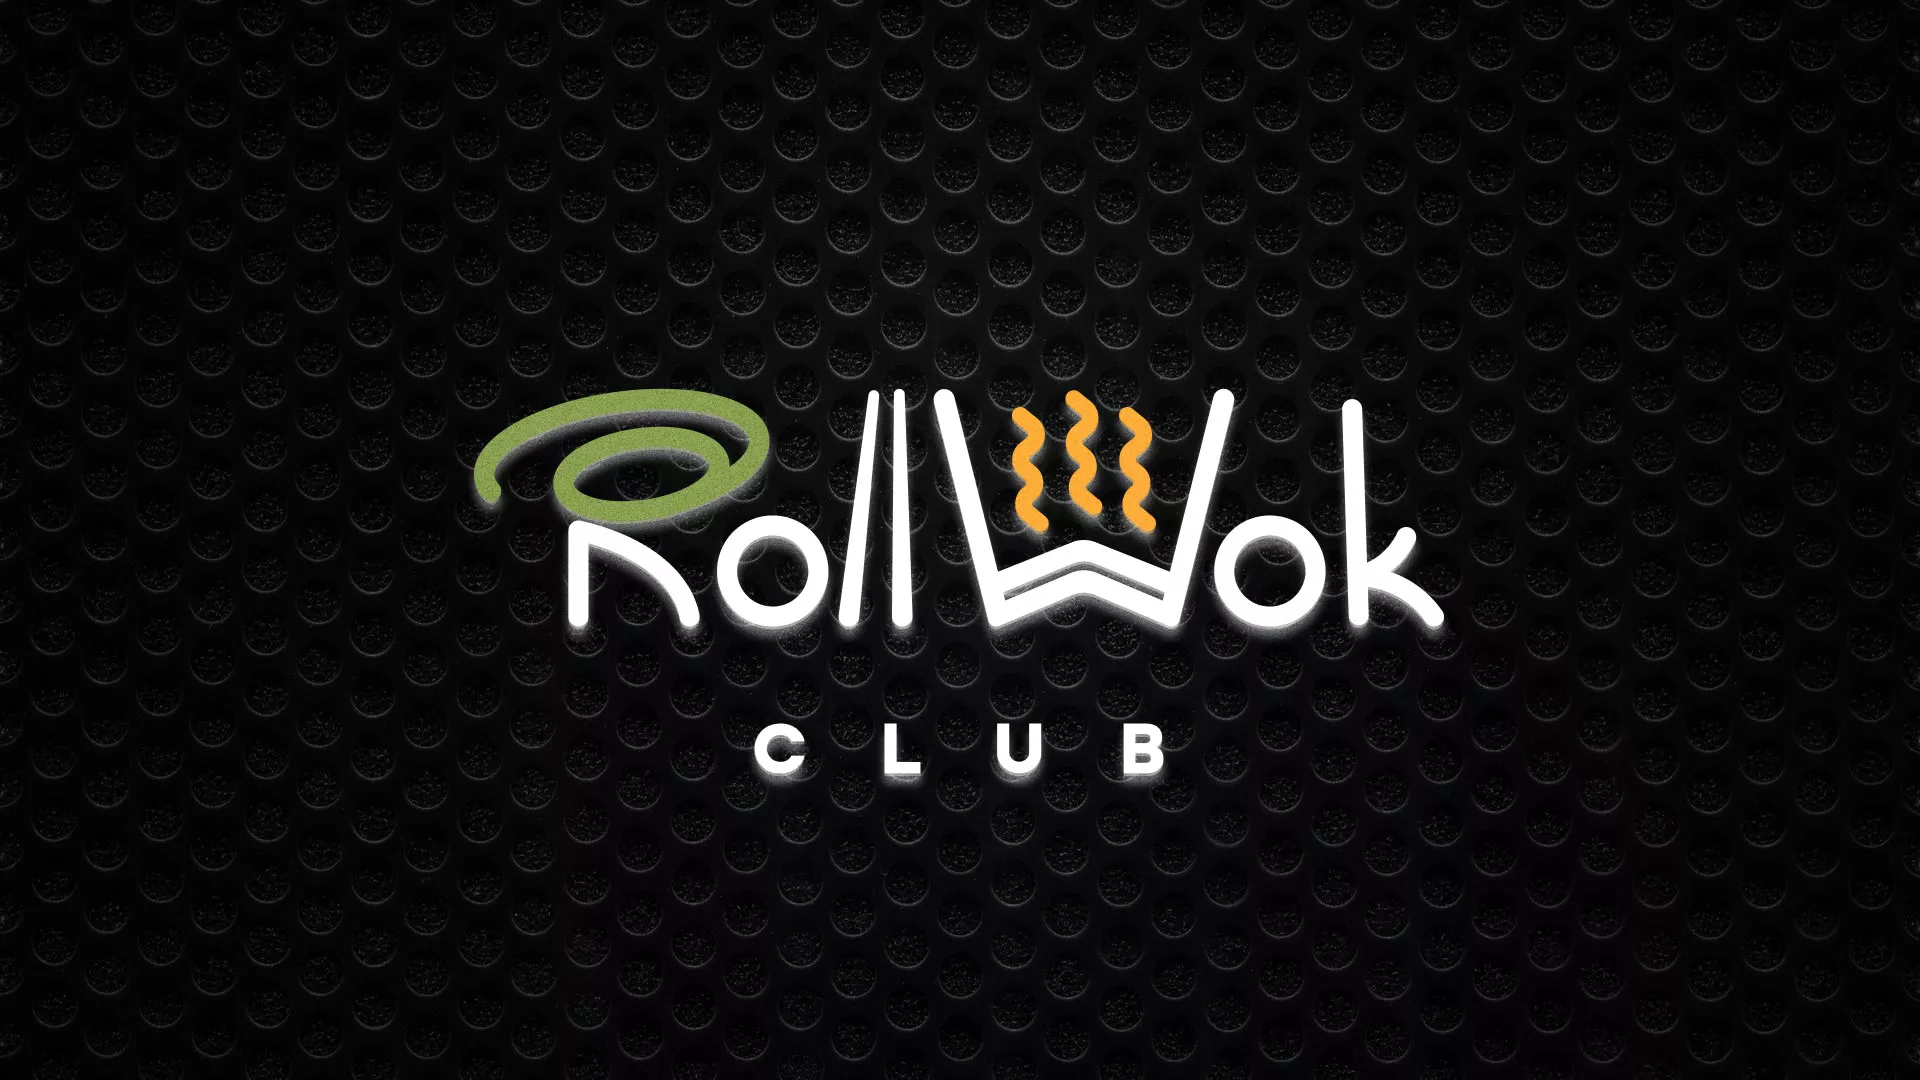 Брендирование торговых точек суши-бара «Roll Wok Club» в Ладушкине